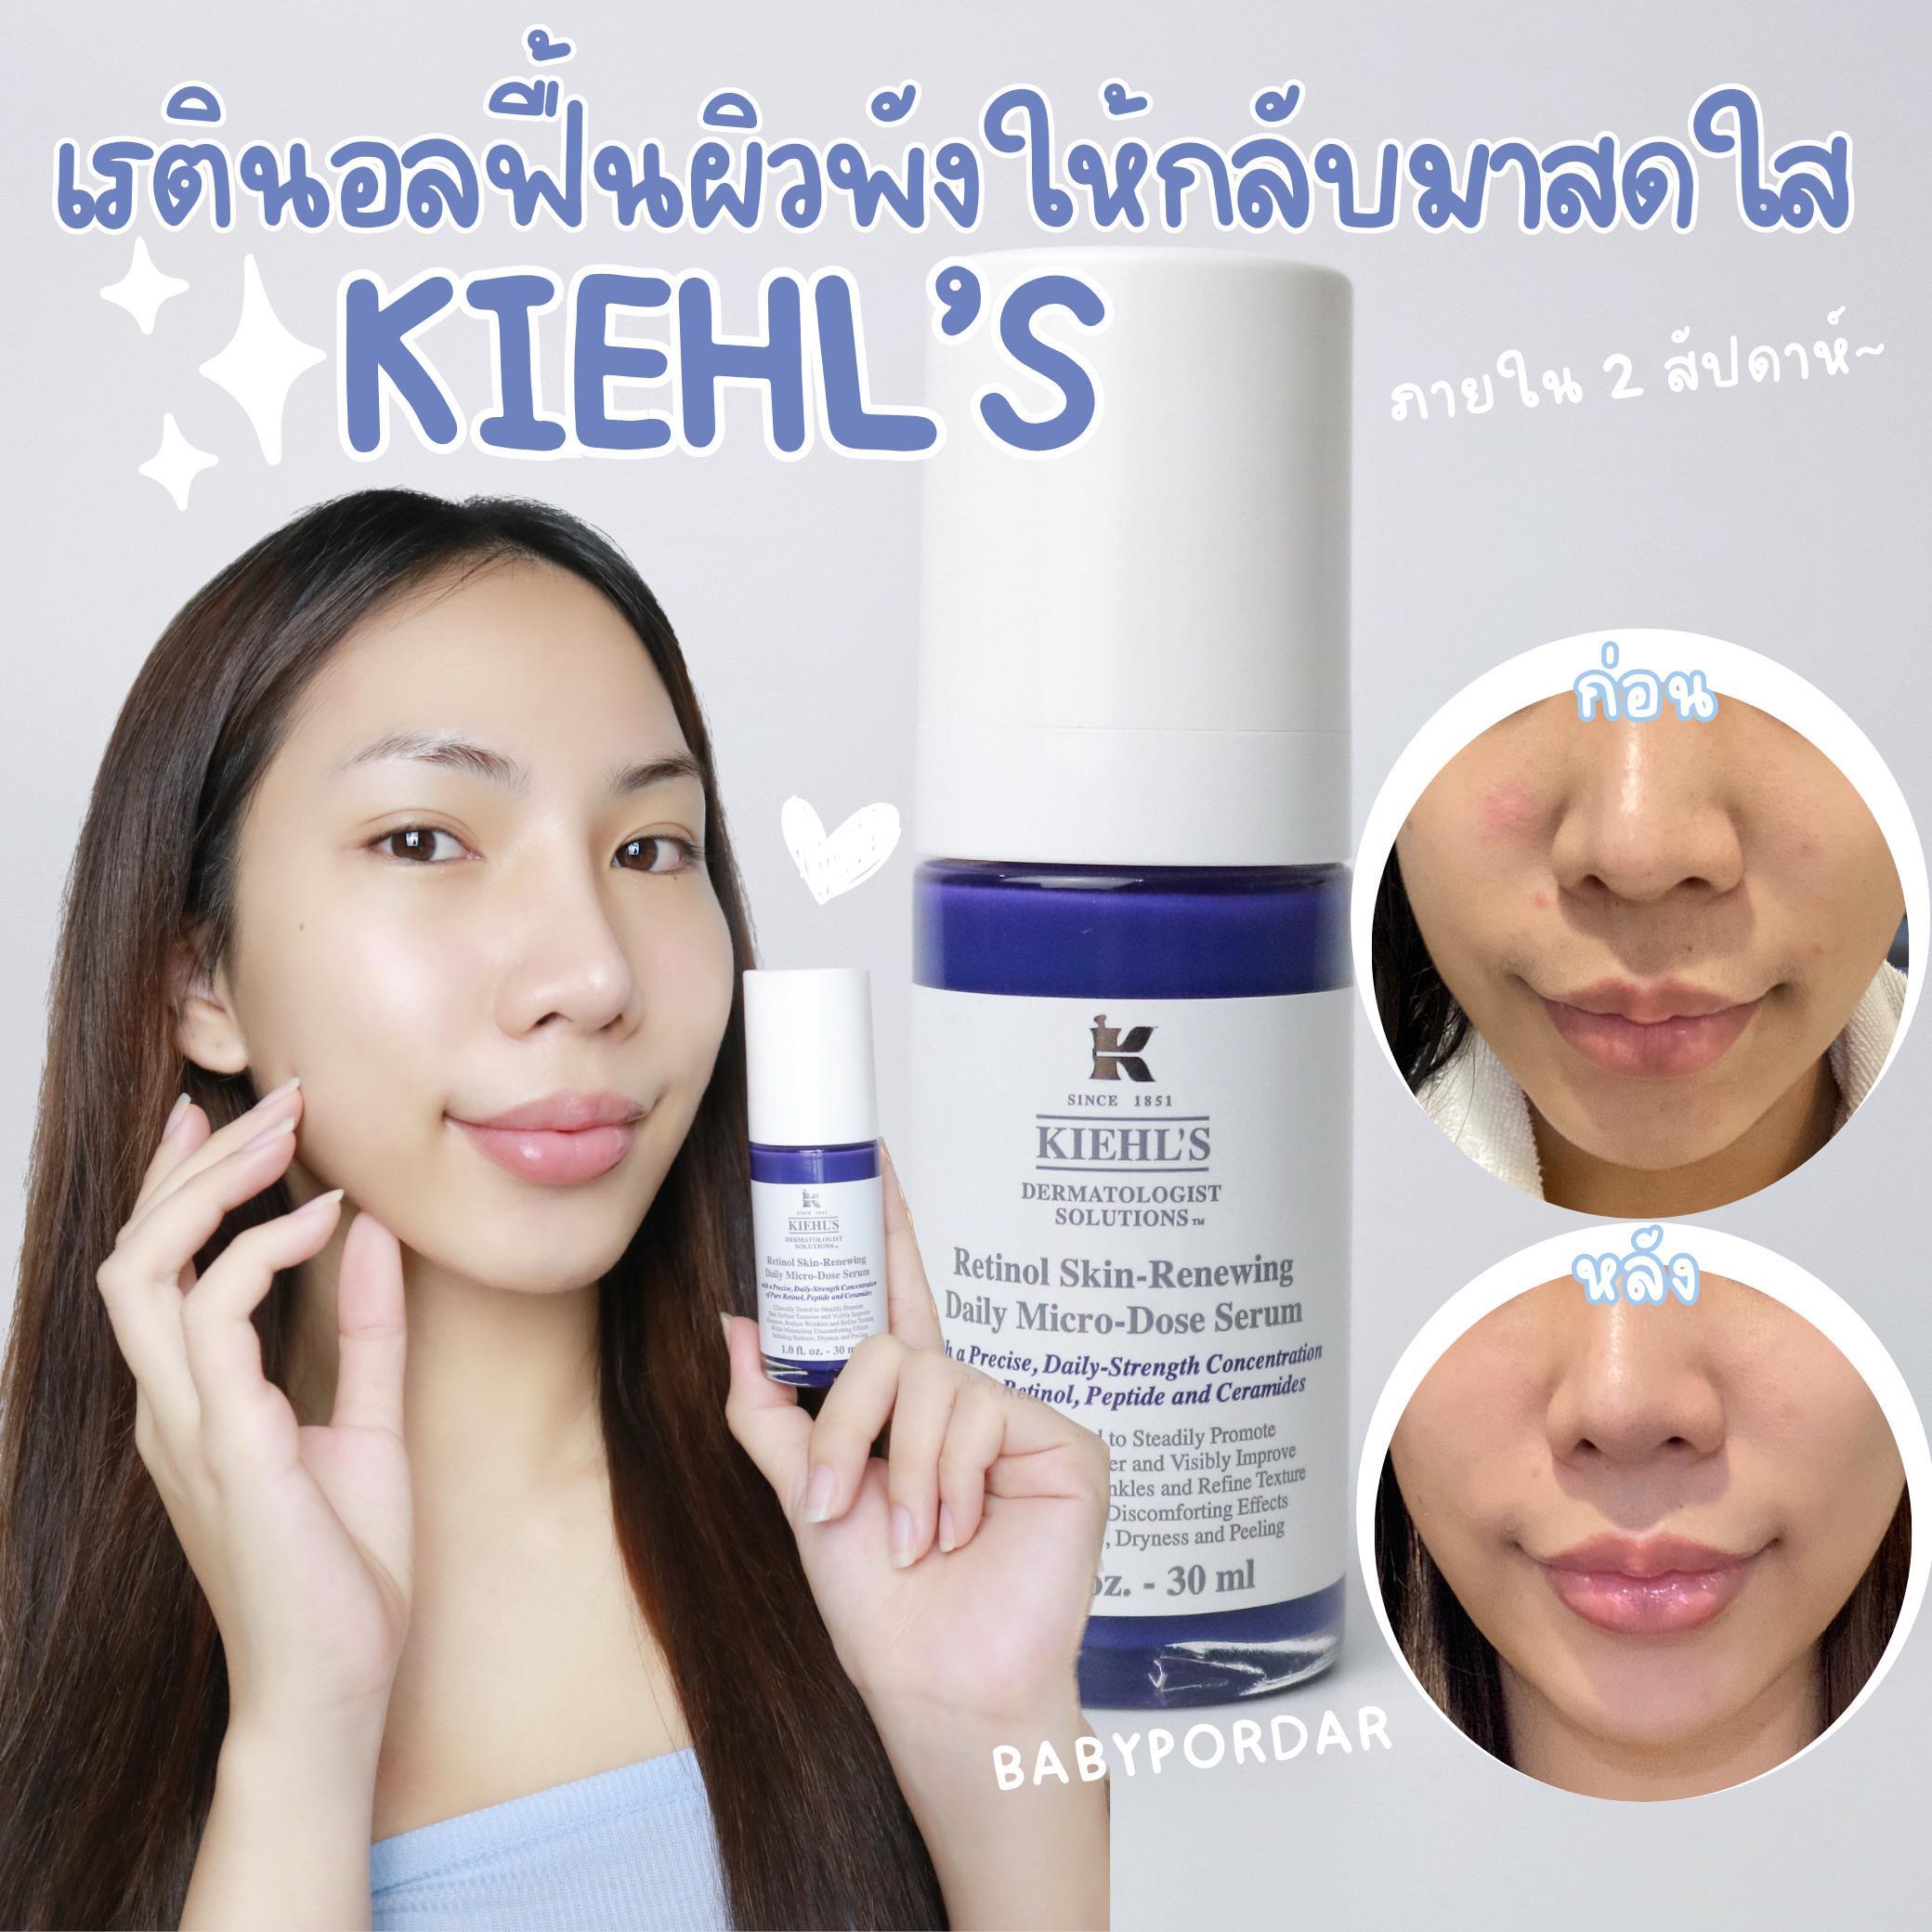 ภาพหน้าปก รีวิวเรตินอลฟื้นผิวพังให้กลับมาสดใส ใน 2 week! - Kiehl's “Retinol Skin Renewing Daily Micro-dose Serum” ที่:0